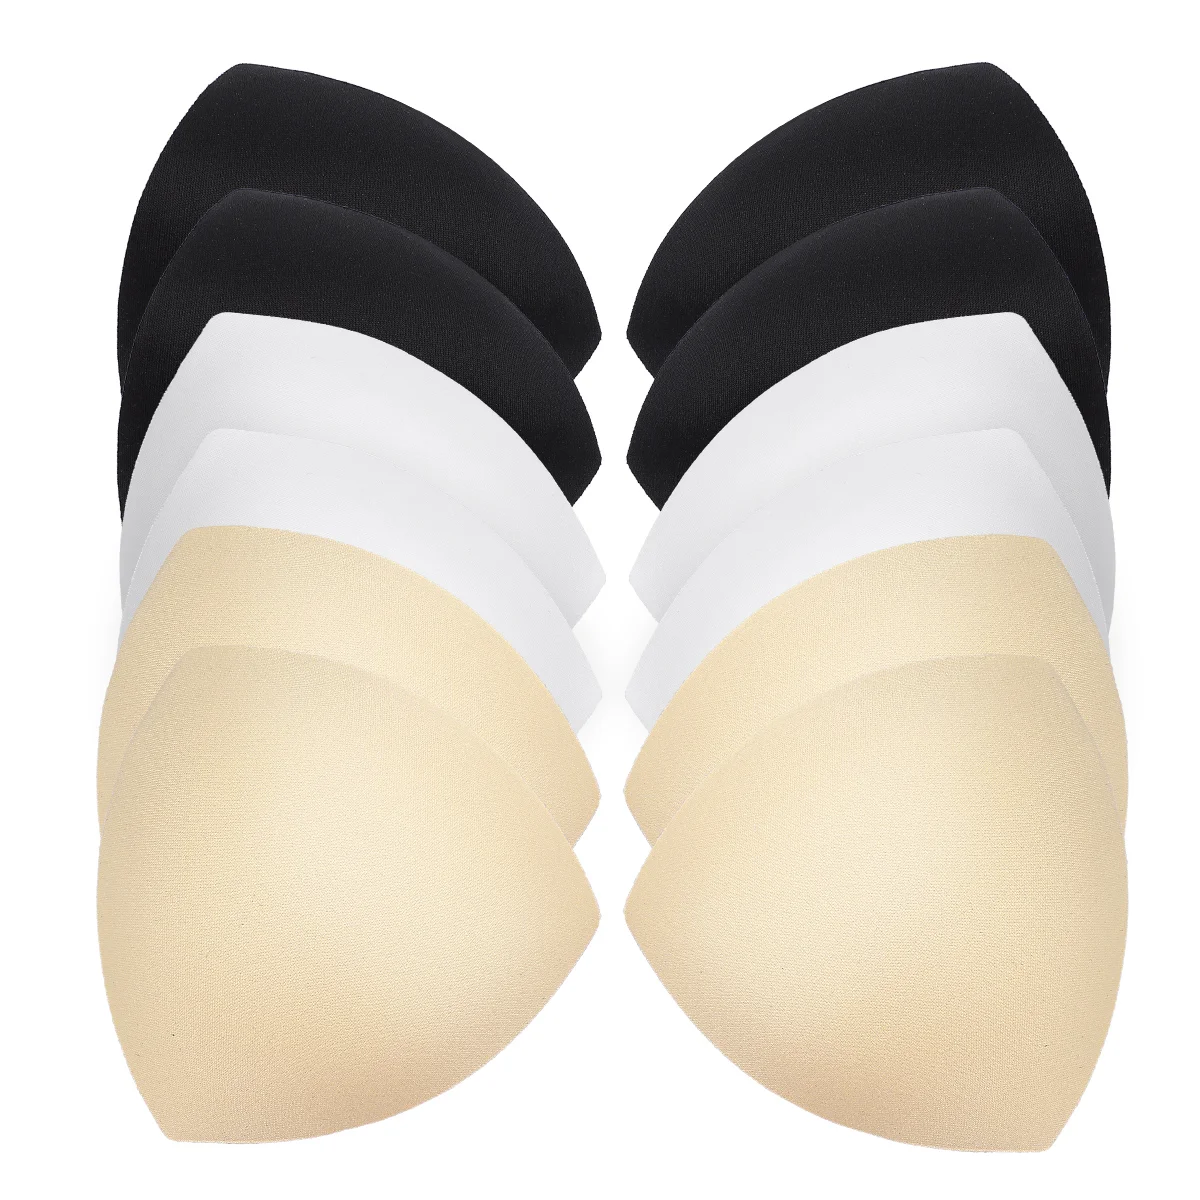 Женский съемный бюстгальтер TENDYCOCO с губчатой подкладкой, вкладыши для бюстгальтера, накладки для спортивных купальников (белый / черный /цвет кожи)